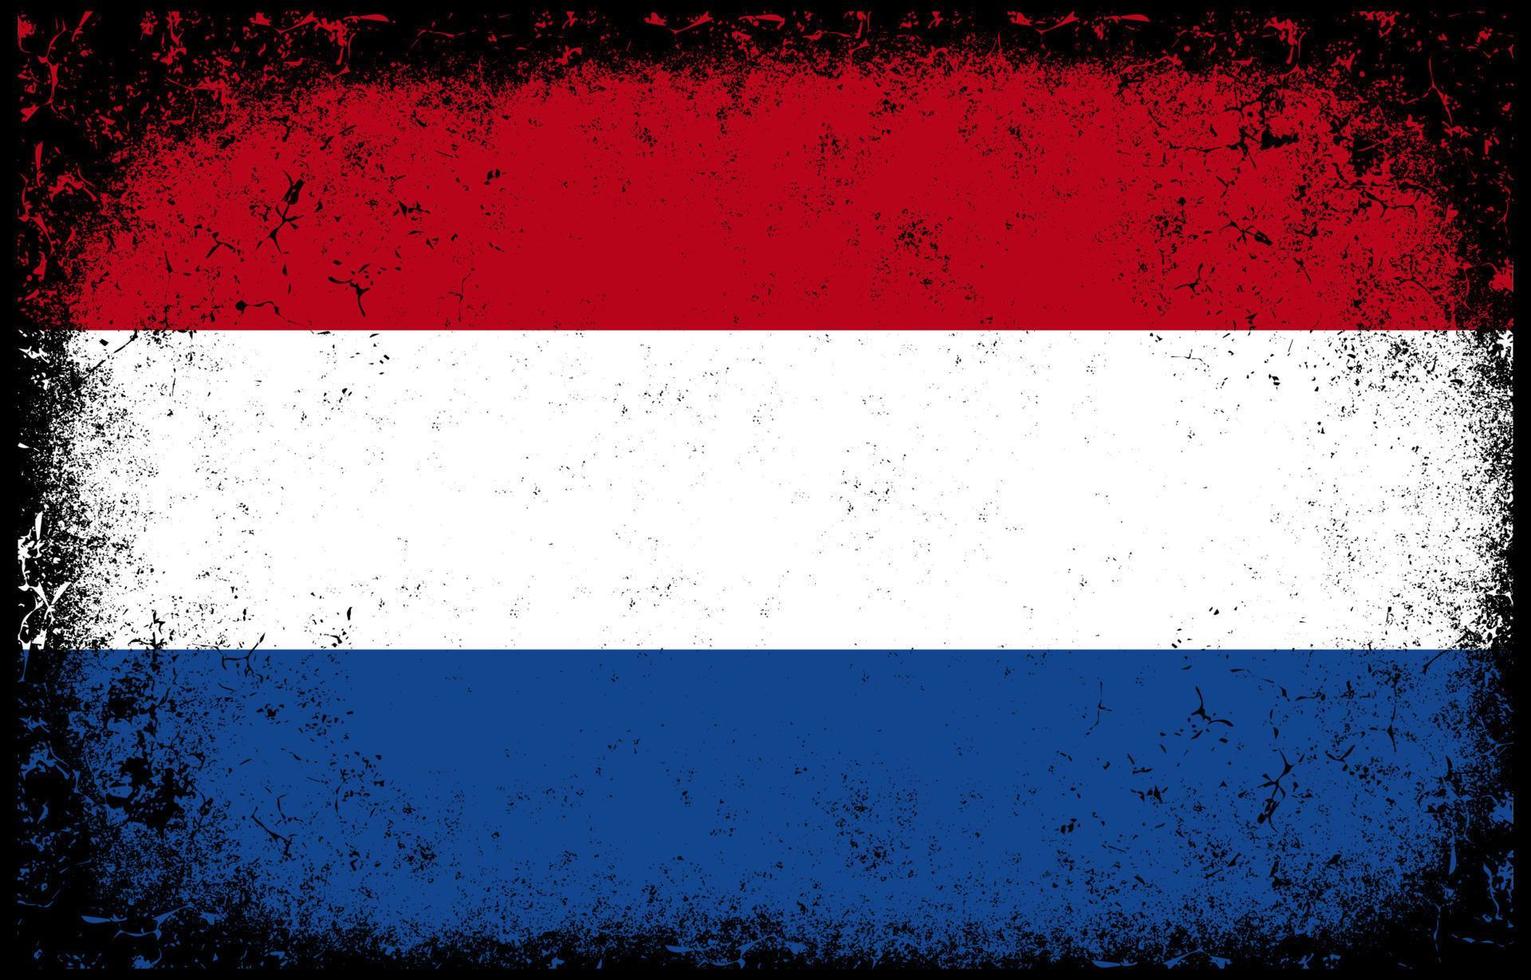 viejo sucio grunge vintage holanda bandera nacional ilustración vector